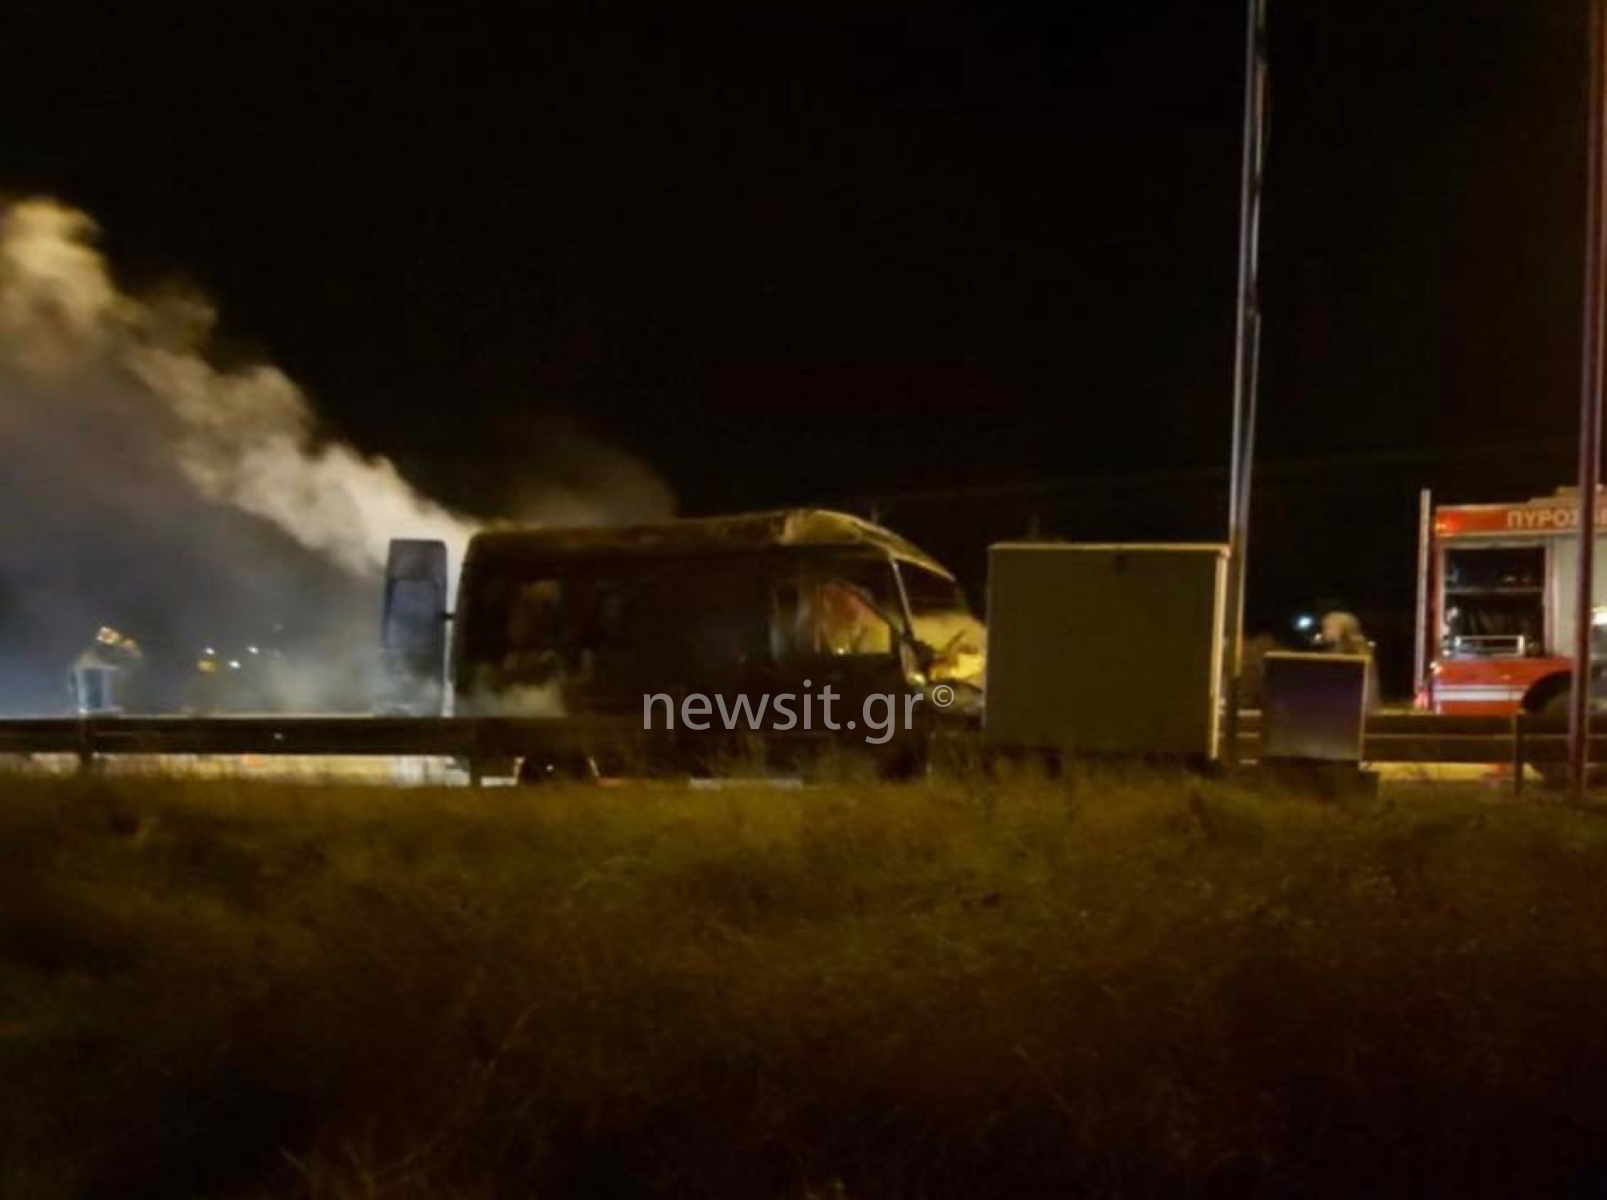 Θεσσαλονίκη: Βίντεο σοκ από τροχαίο – Έβγαλαν 26χρονο μέσα από το φλεγόμενο αυτοκίνητο